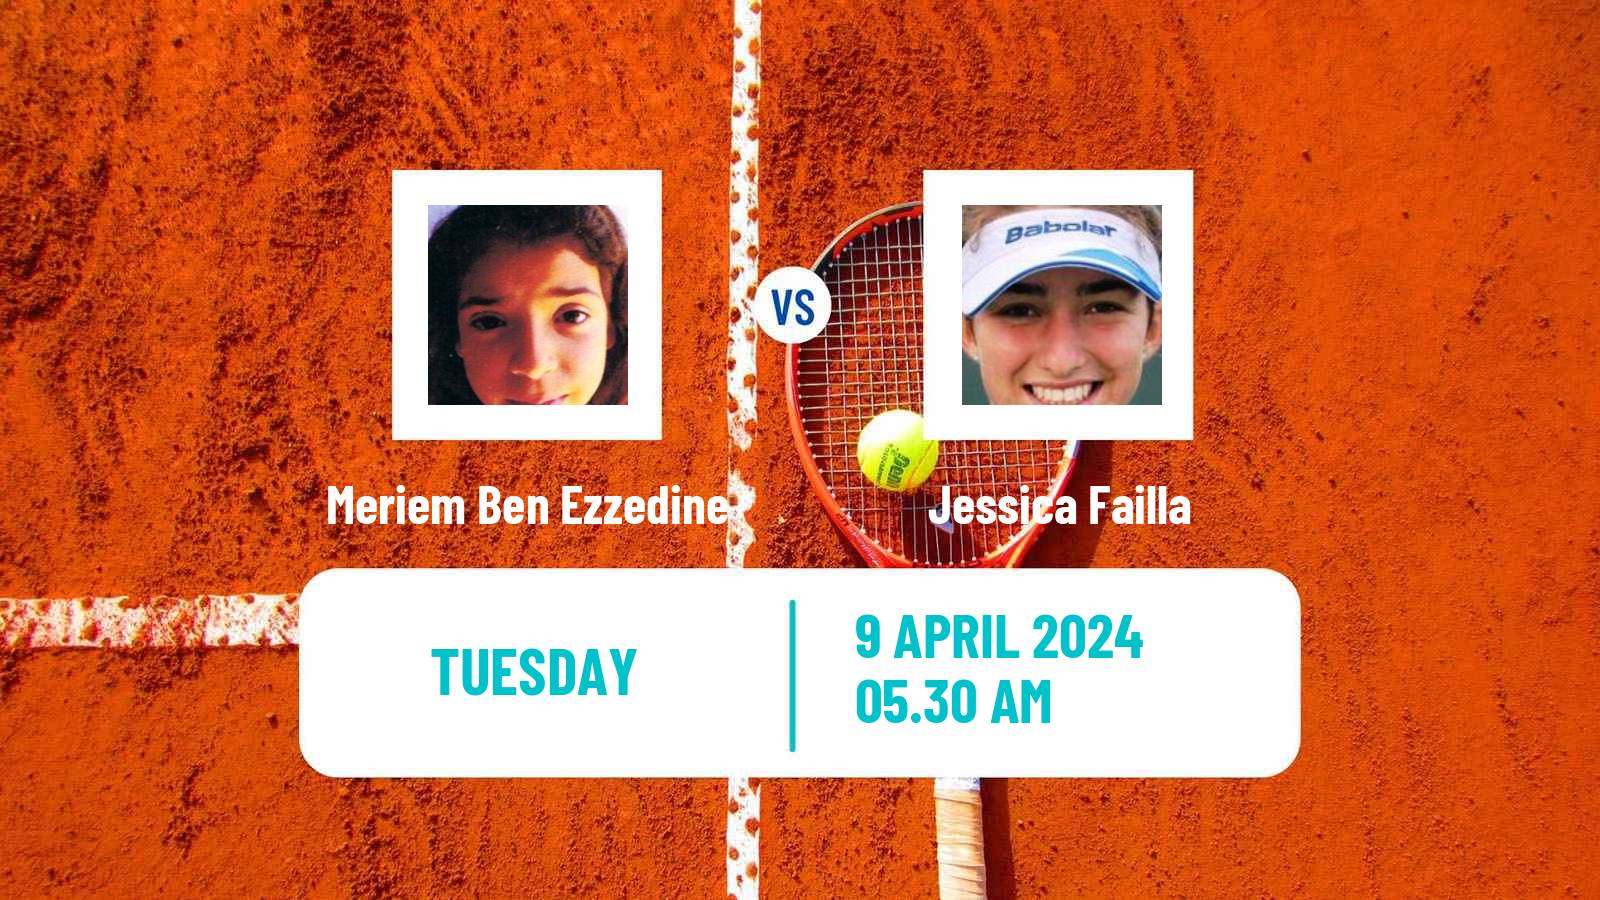 Tennis ITF W15 Monastir 13 Women Meriem Ben Ezzedine - Jessica Failla